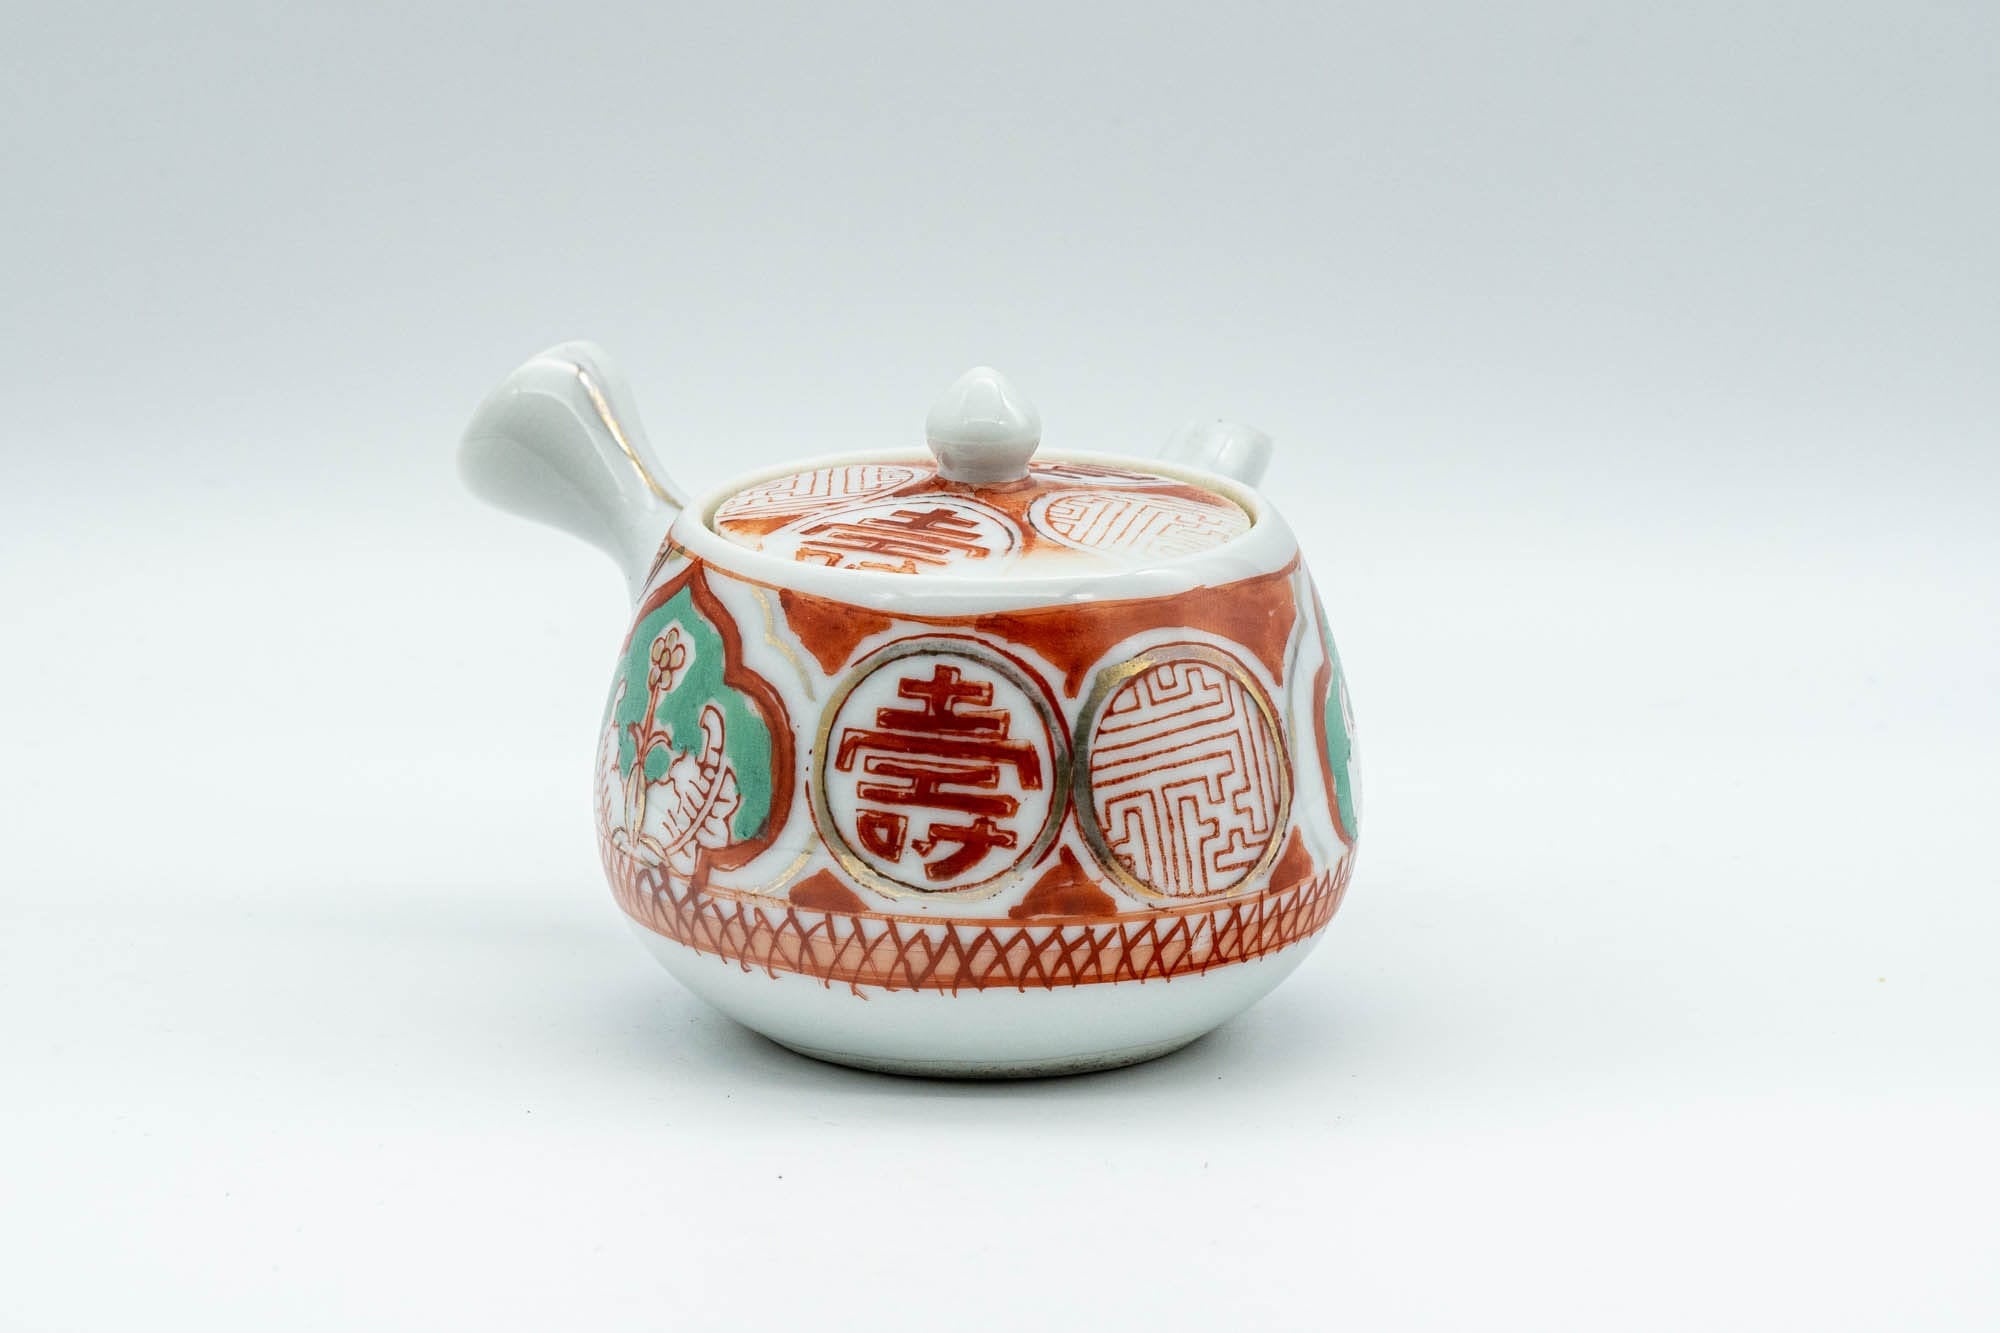 Japanese Kyusu - 壽 Kotobuki Kutani-yaki Porcelain Do-ake Teapot - 100ml